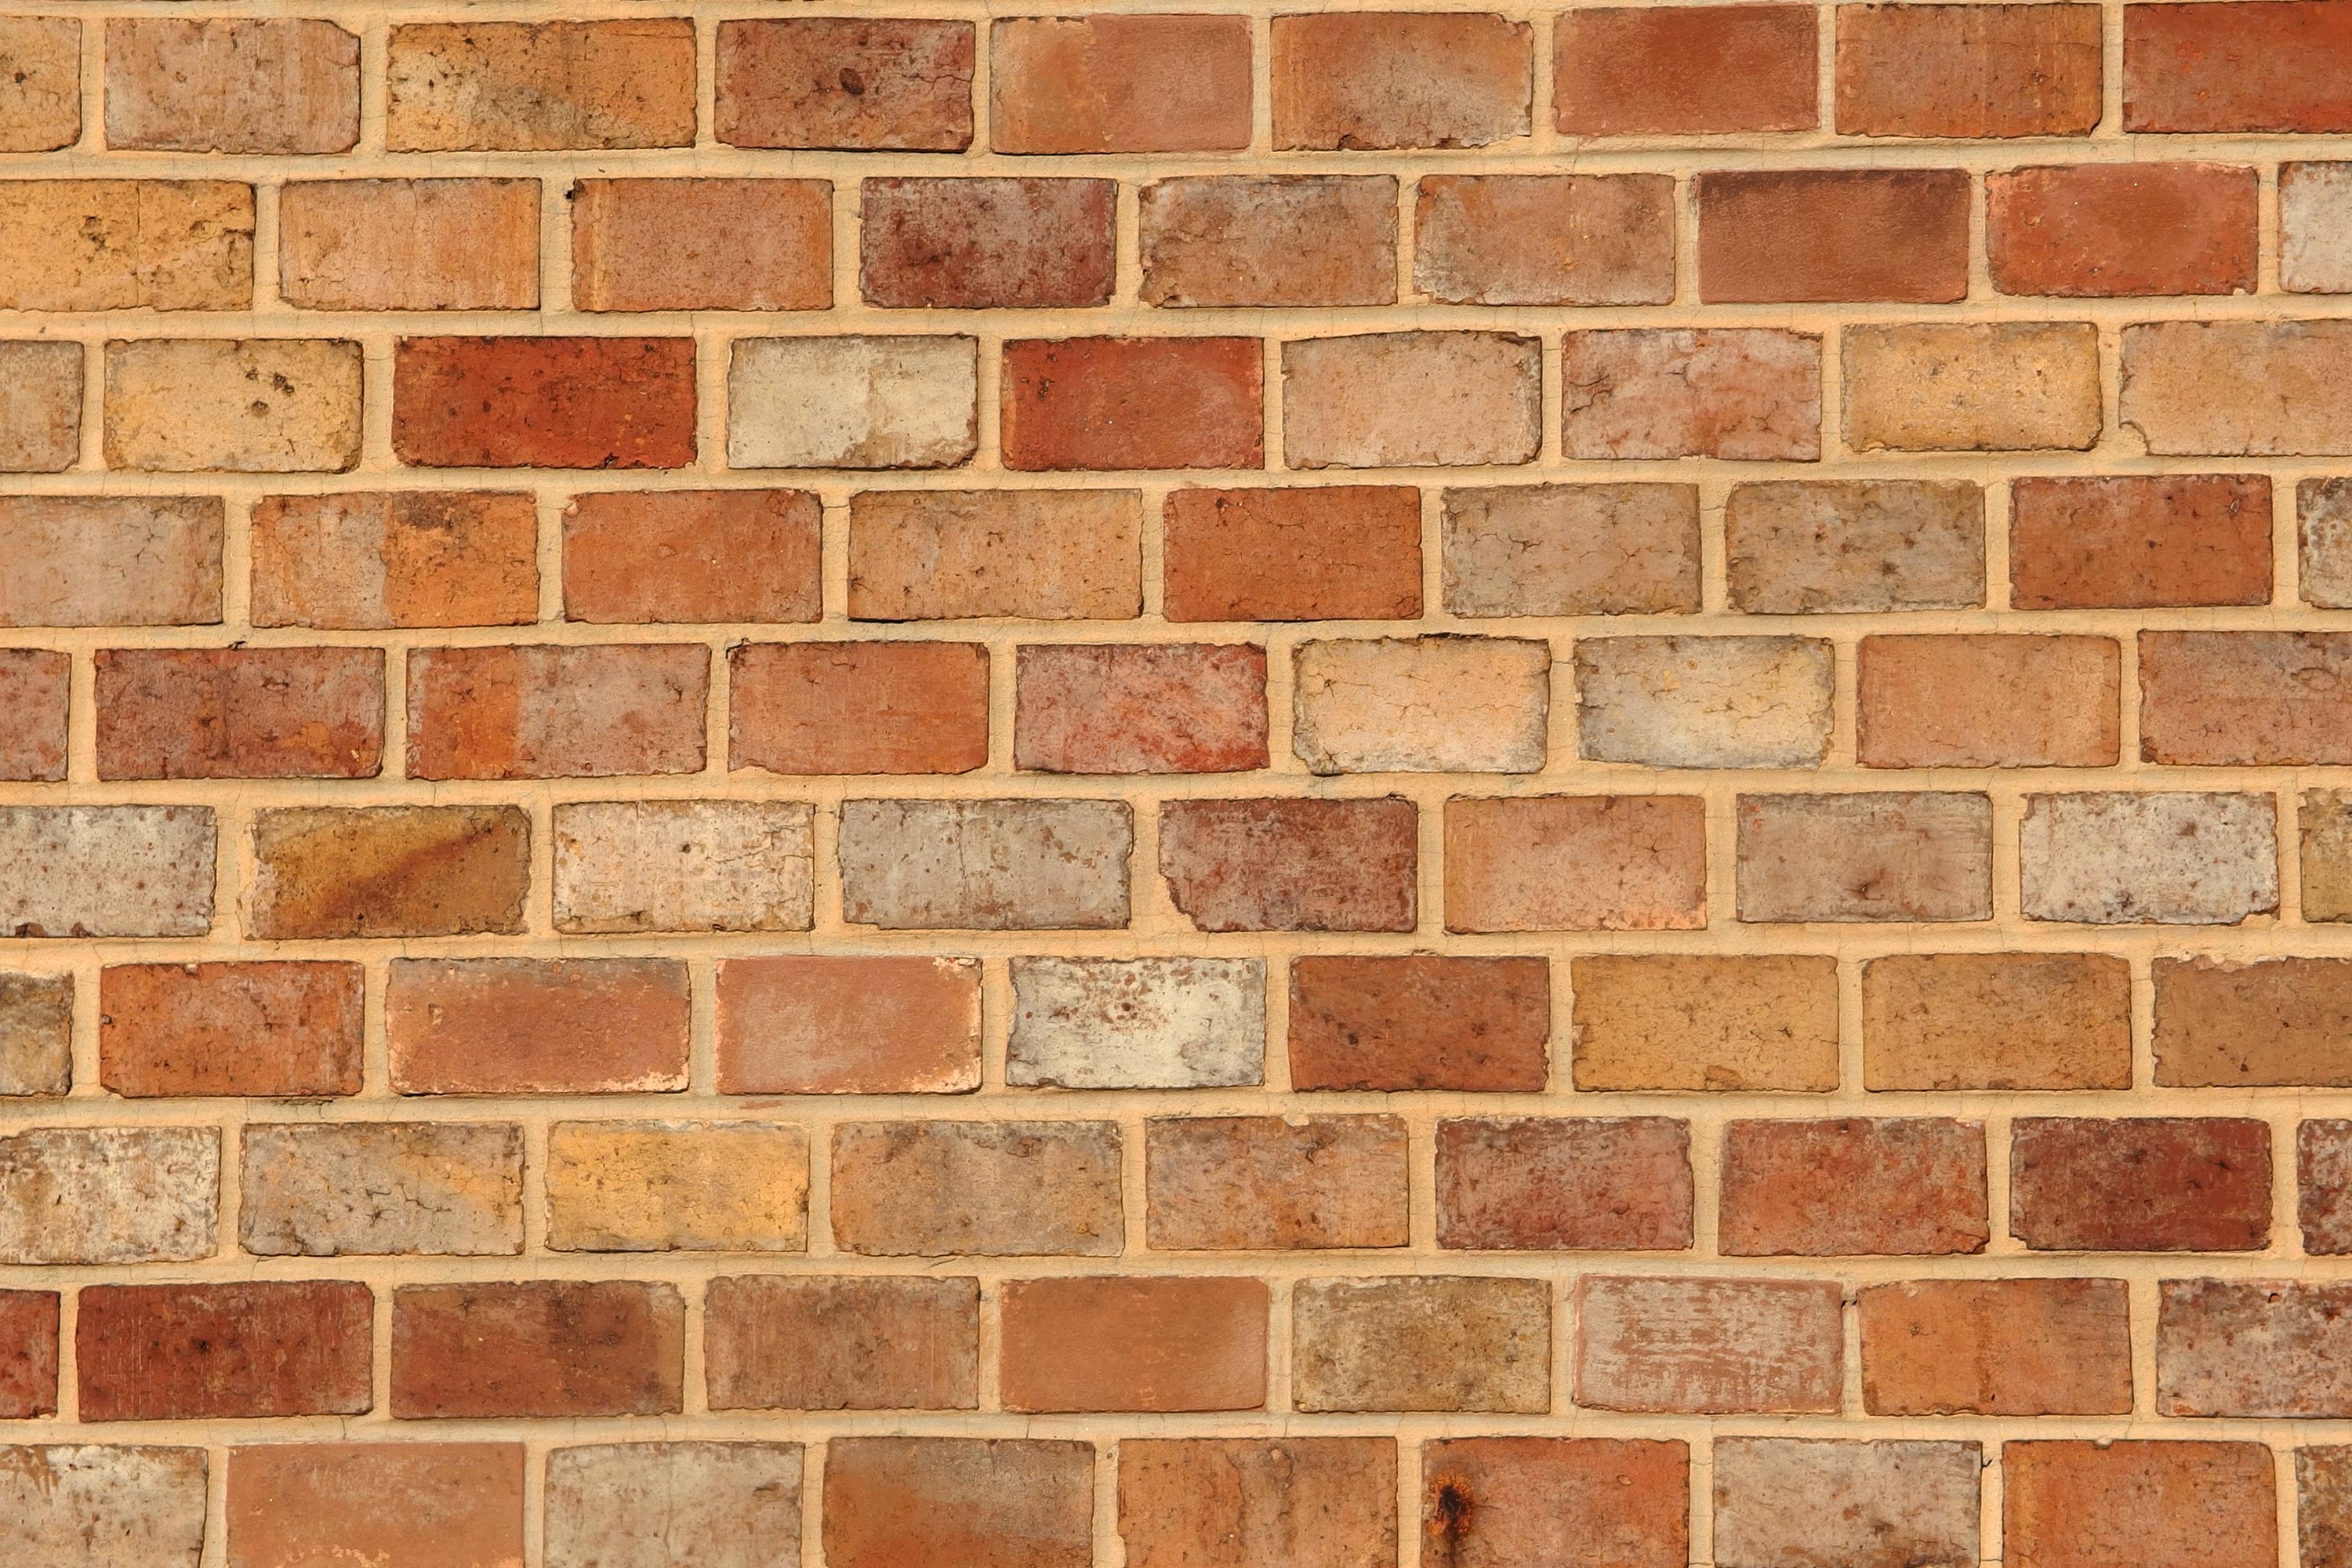 Free Image: Brick Wall Texture | Libreshot Public Domain Photos